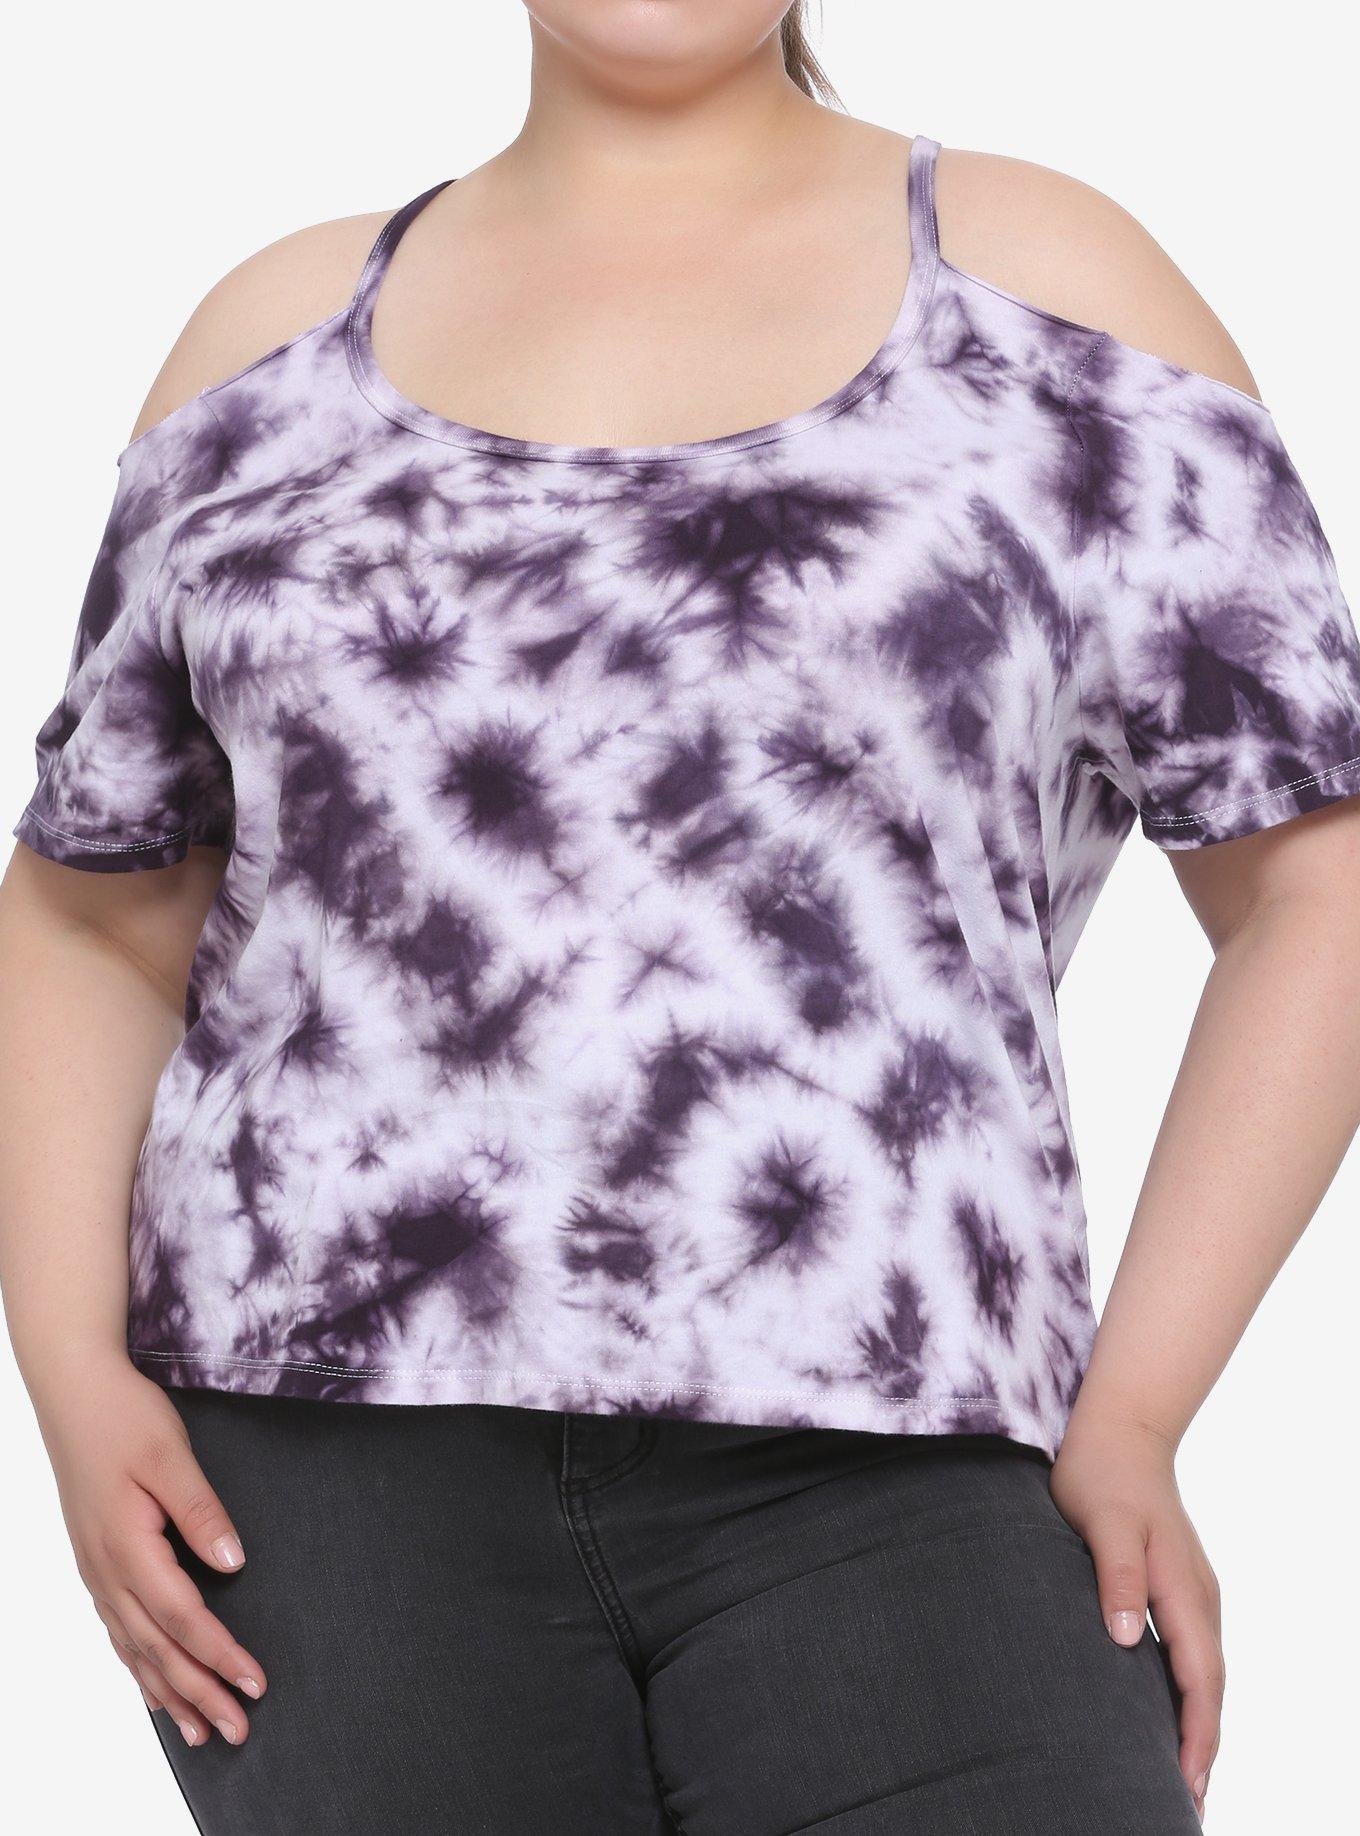 Purple Tie-Dye Cold Shoulder Girls Top Plus Size, MULTI, hi-res